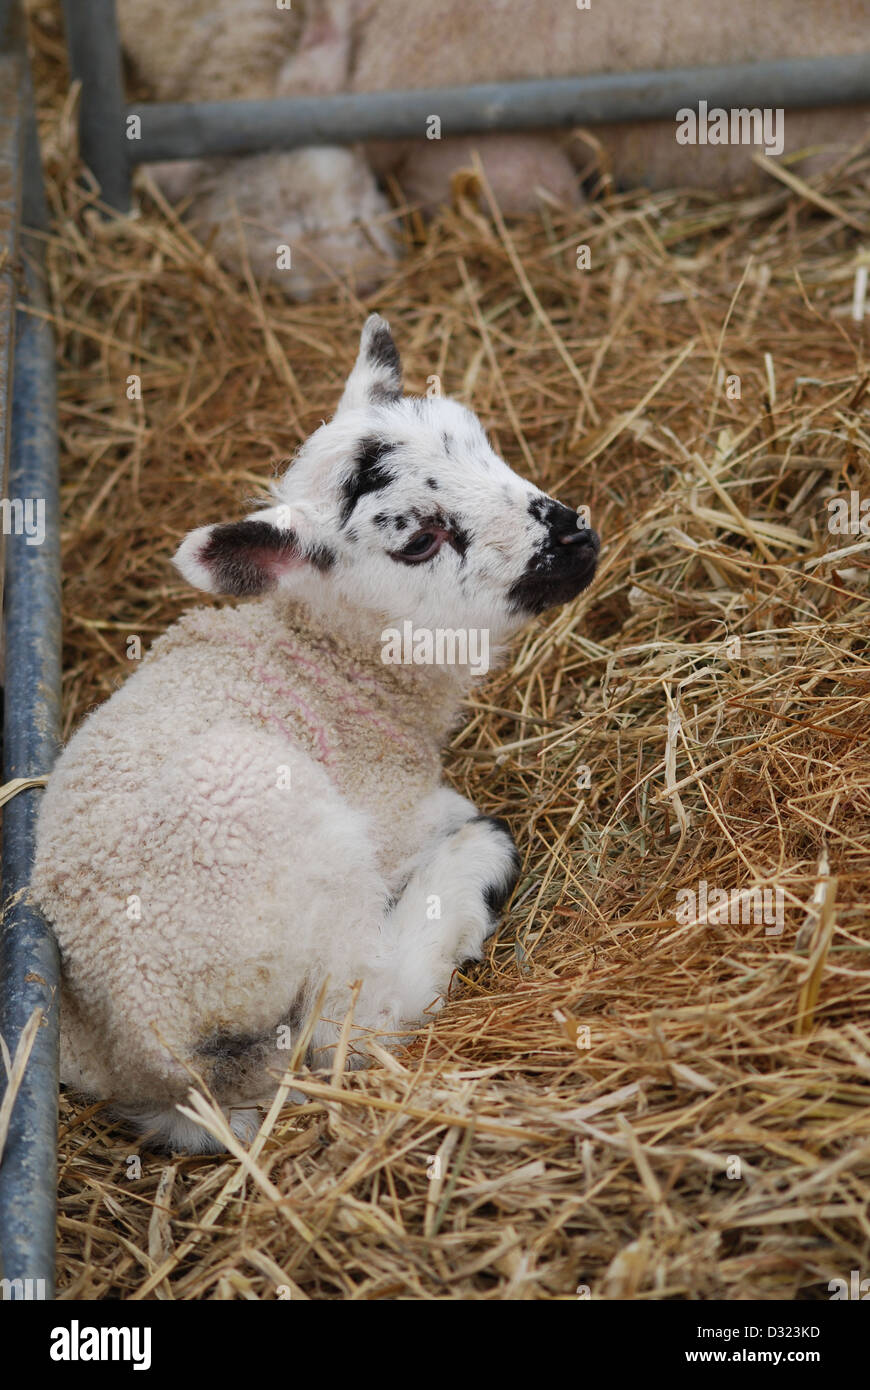 Einem neugeborenen Lamm auf einem Streichelzoo und Bauernhof in einen Stift von frischem Heu oder Stroh, Nahaufnahme von schwarzen und weißen Gesicht Stockfoto